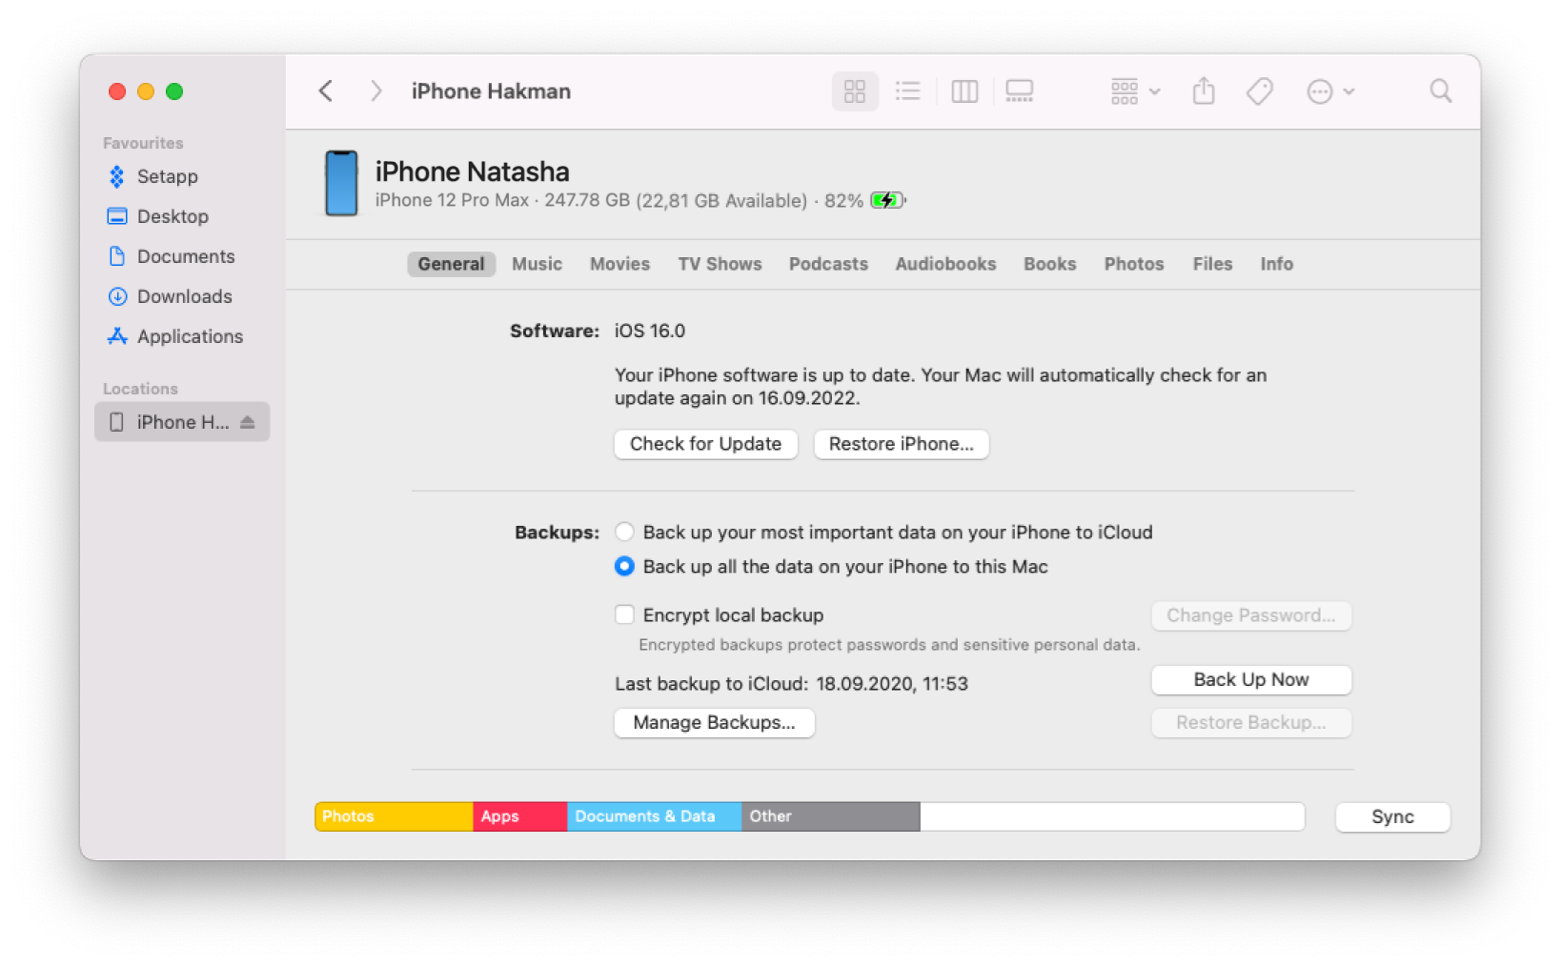 update an iPhone using a Mac